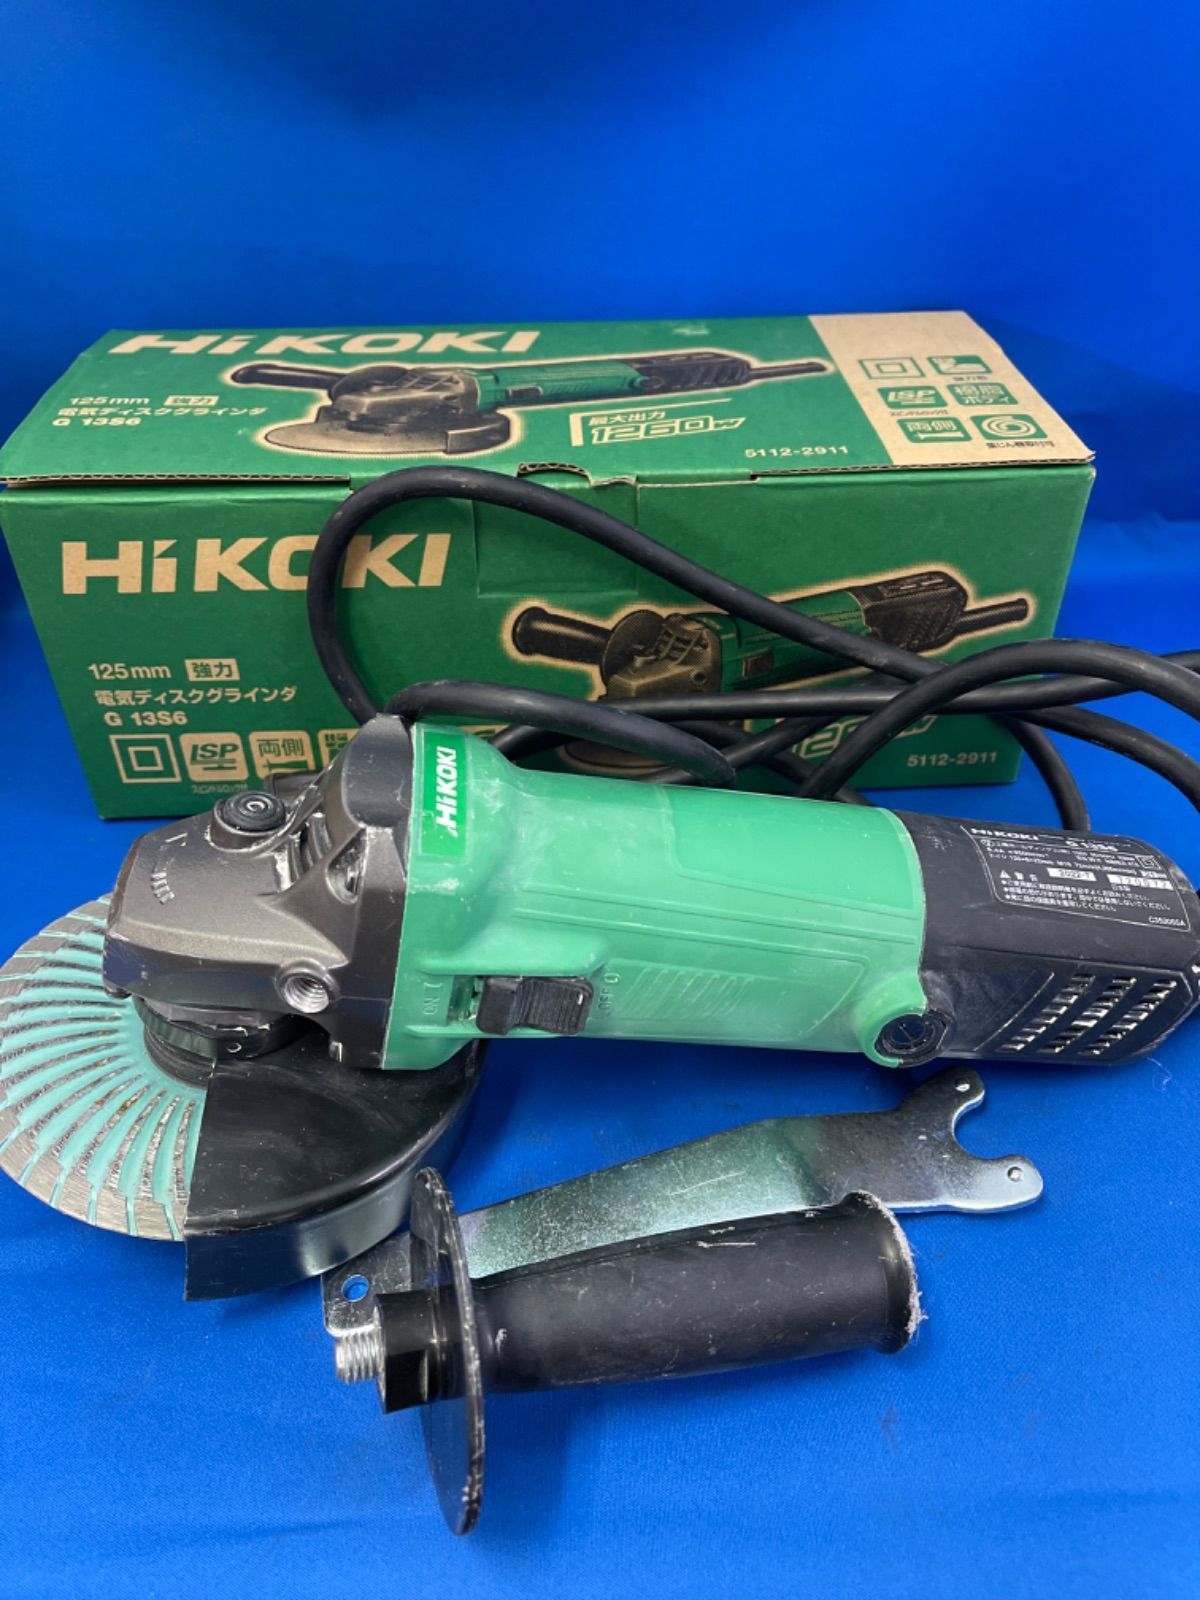 HiKOKI 125mm ディスクグラインダー G13S6 - メルカリ